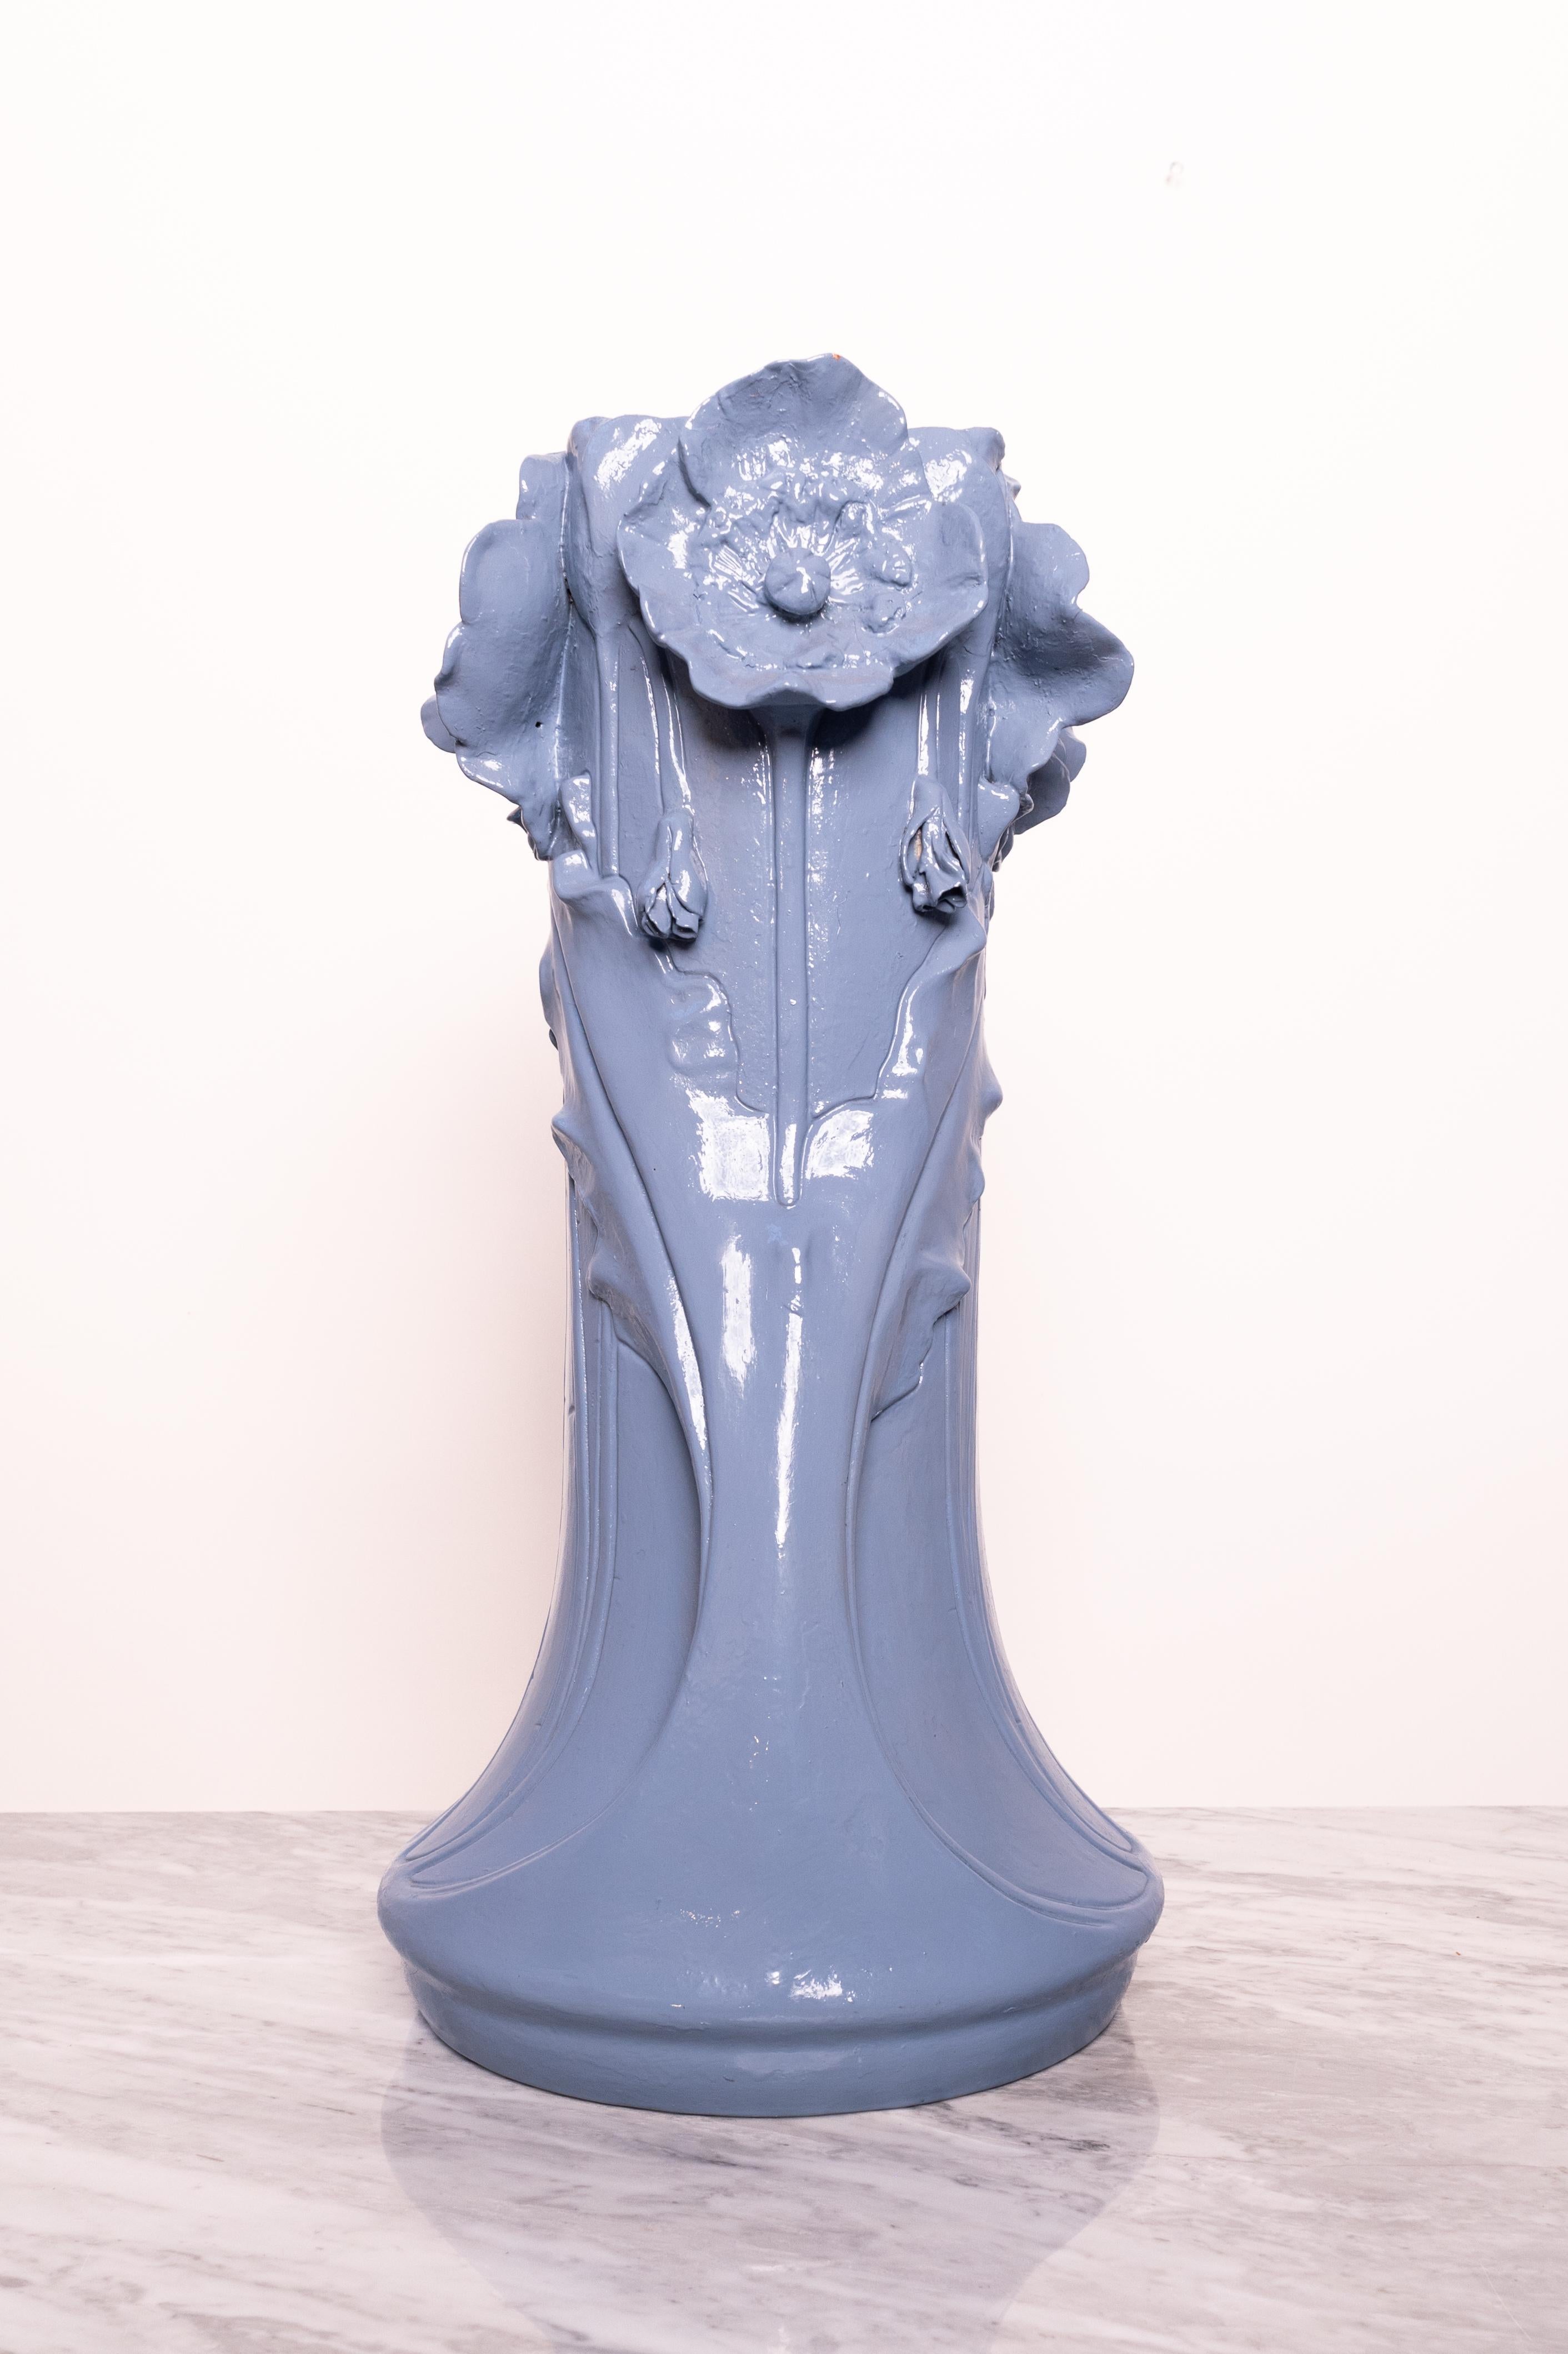 Austrian X-Large Jugendstil ceramic vase by Julius Dressler (late 19th – early 20th cent) For Sale